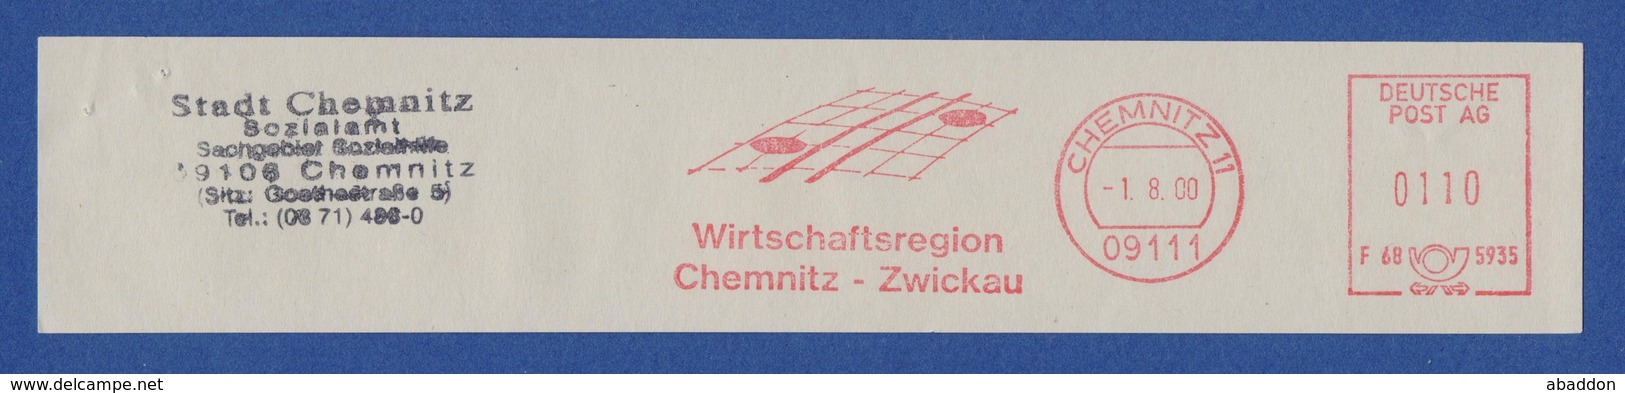 BRD AFS - CHEMNITZ, Wirtschaftsregion Chemnitz-Zwickau 2000 - Maschinenstempel (EMA)